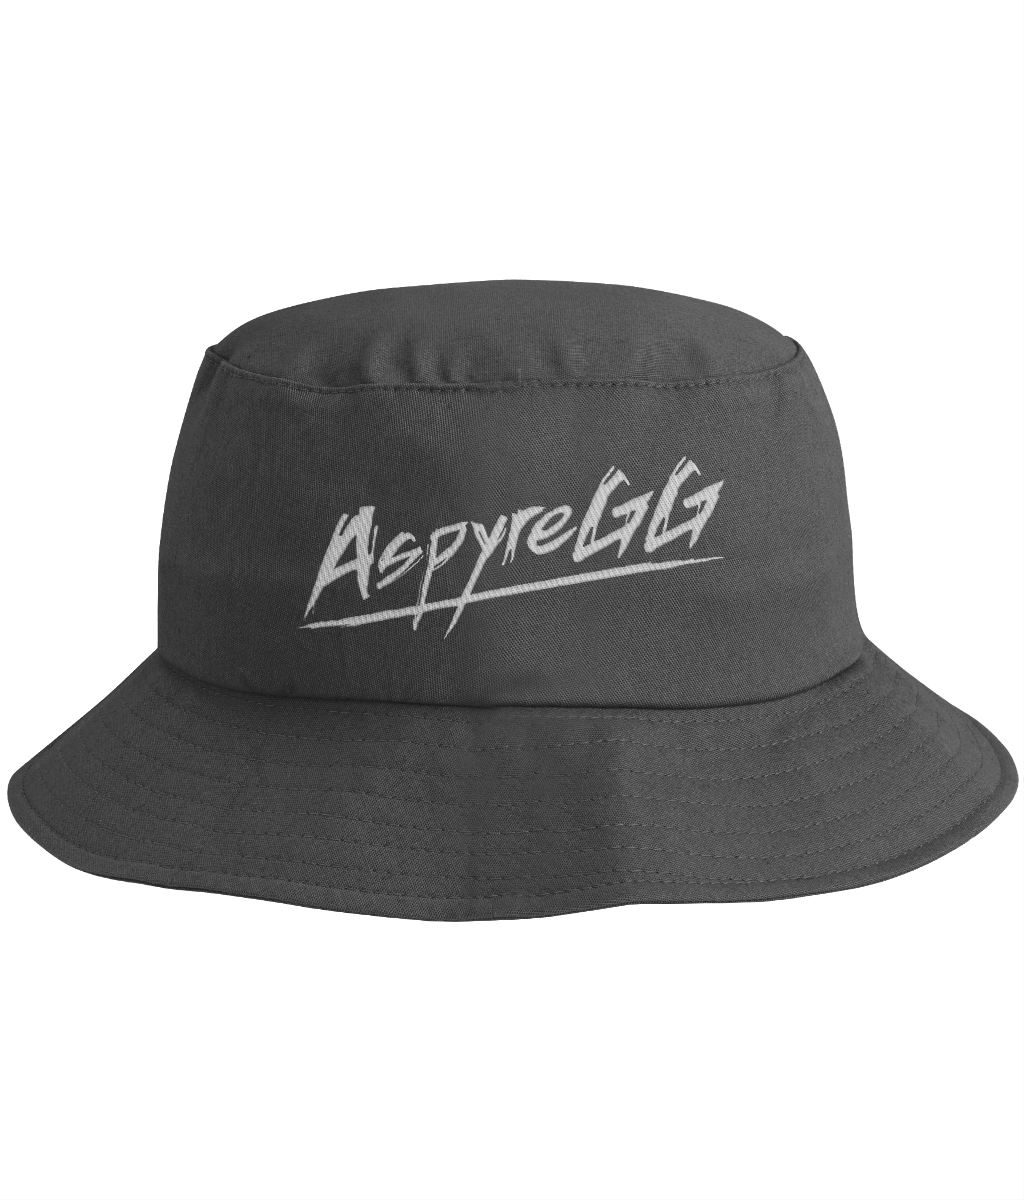 AspyreGG Bucket Hat